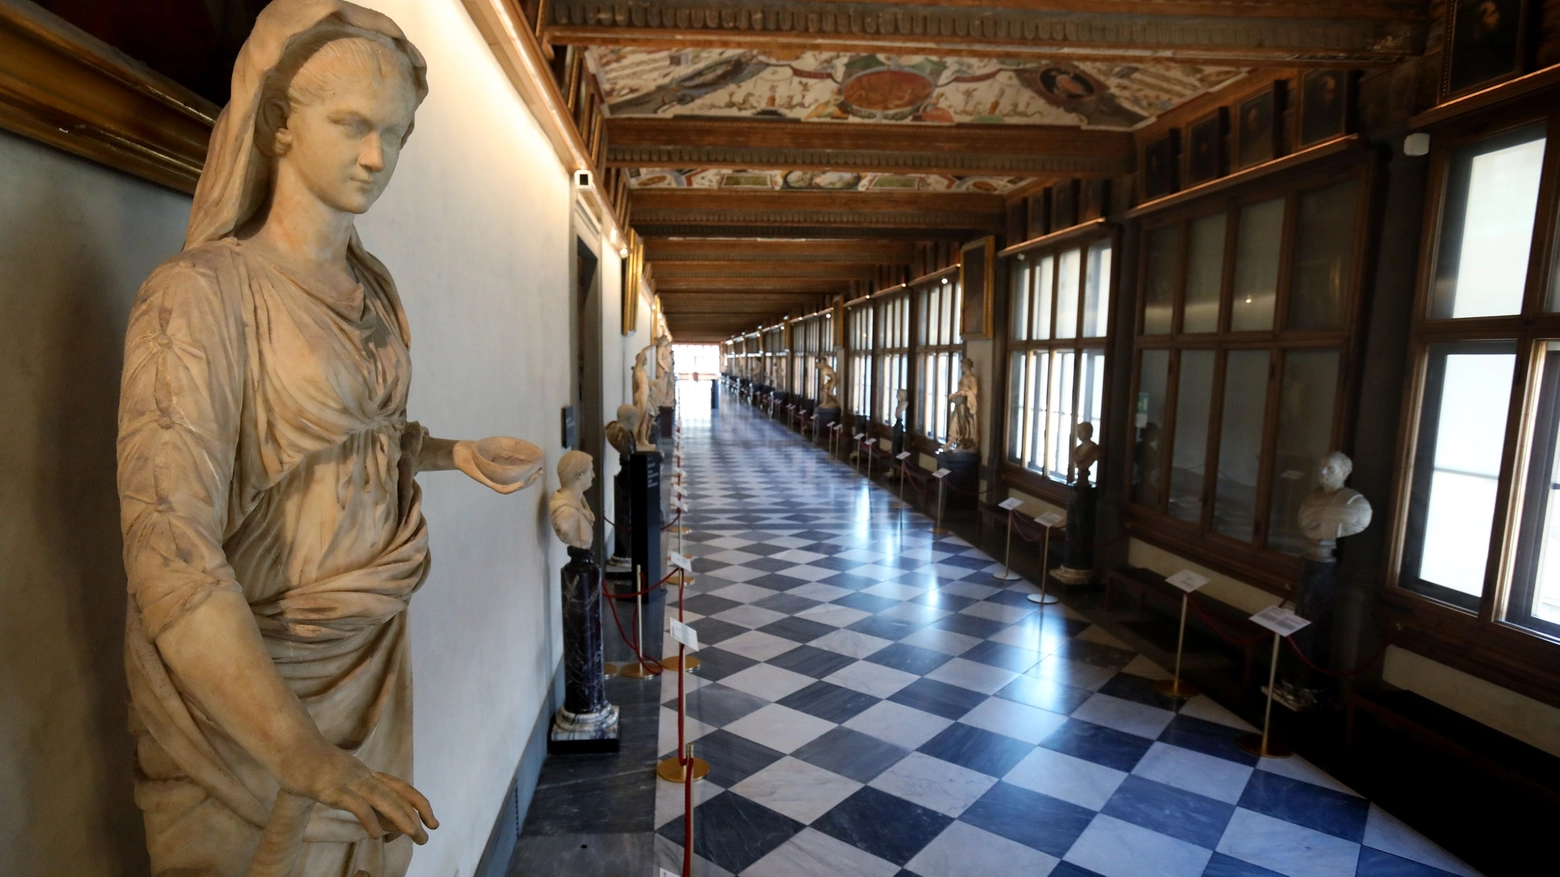 Galleria degli Uffizi chiusa: le sale deserte (Pressphoto)